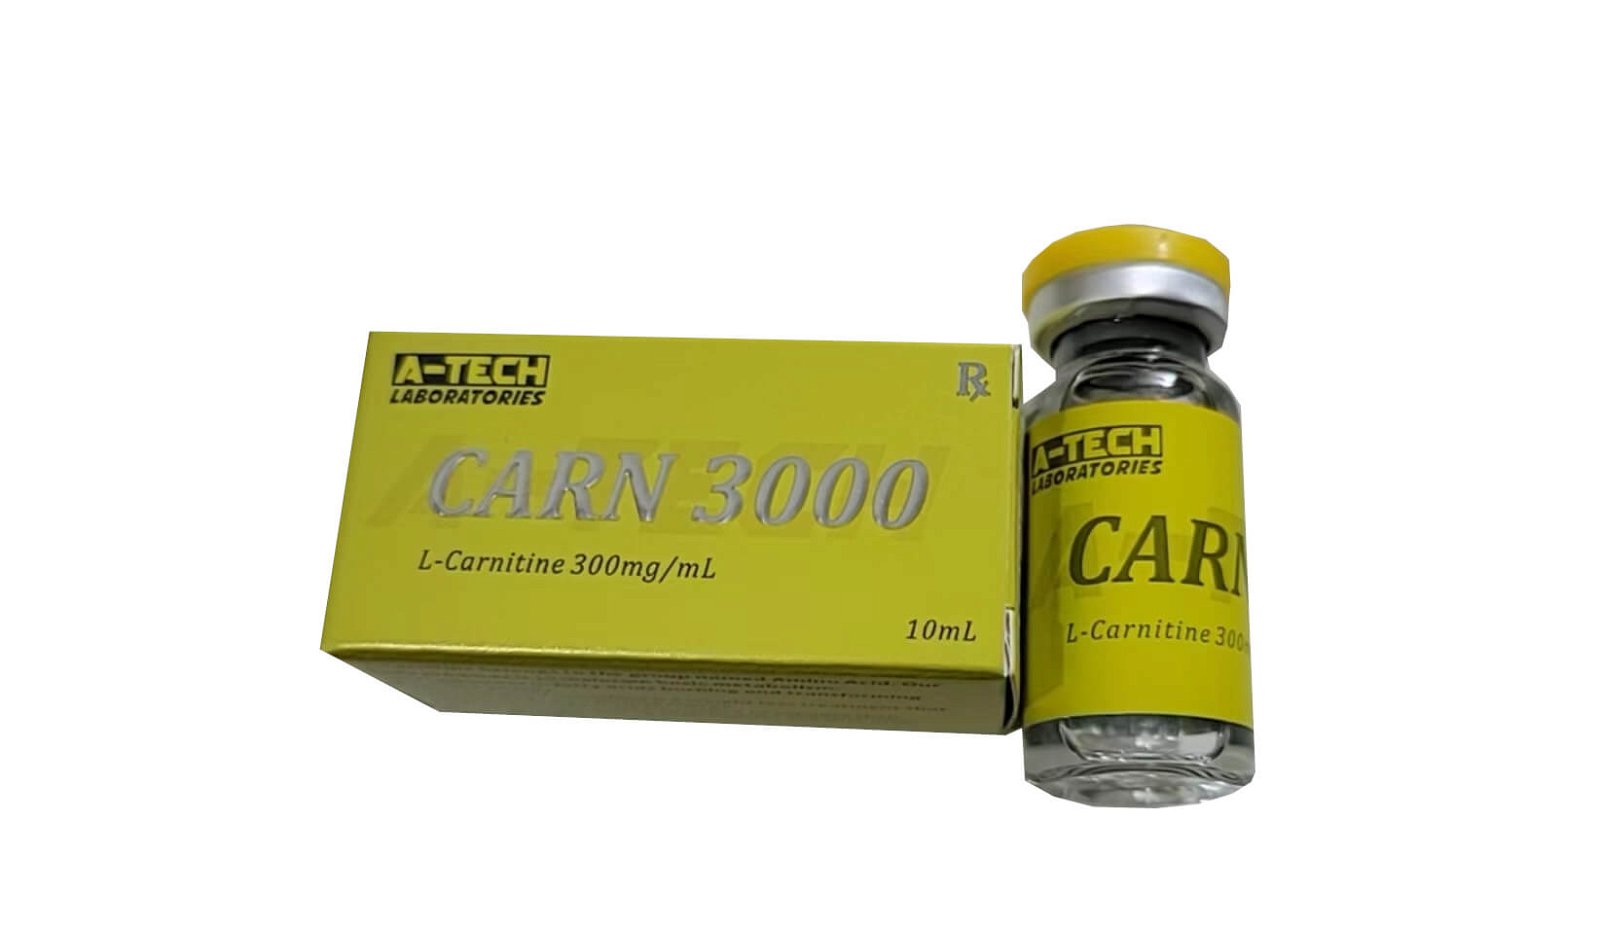 L-carnitine 300mg A-tech labs